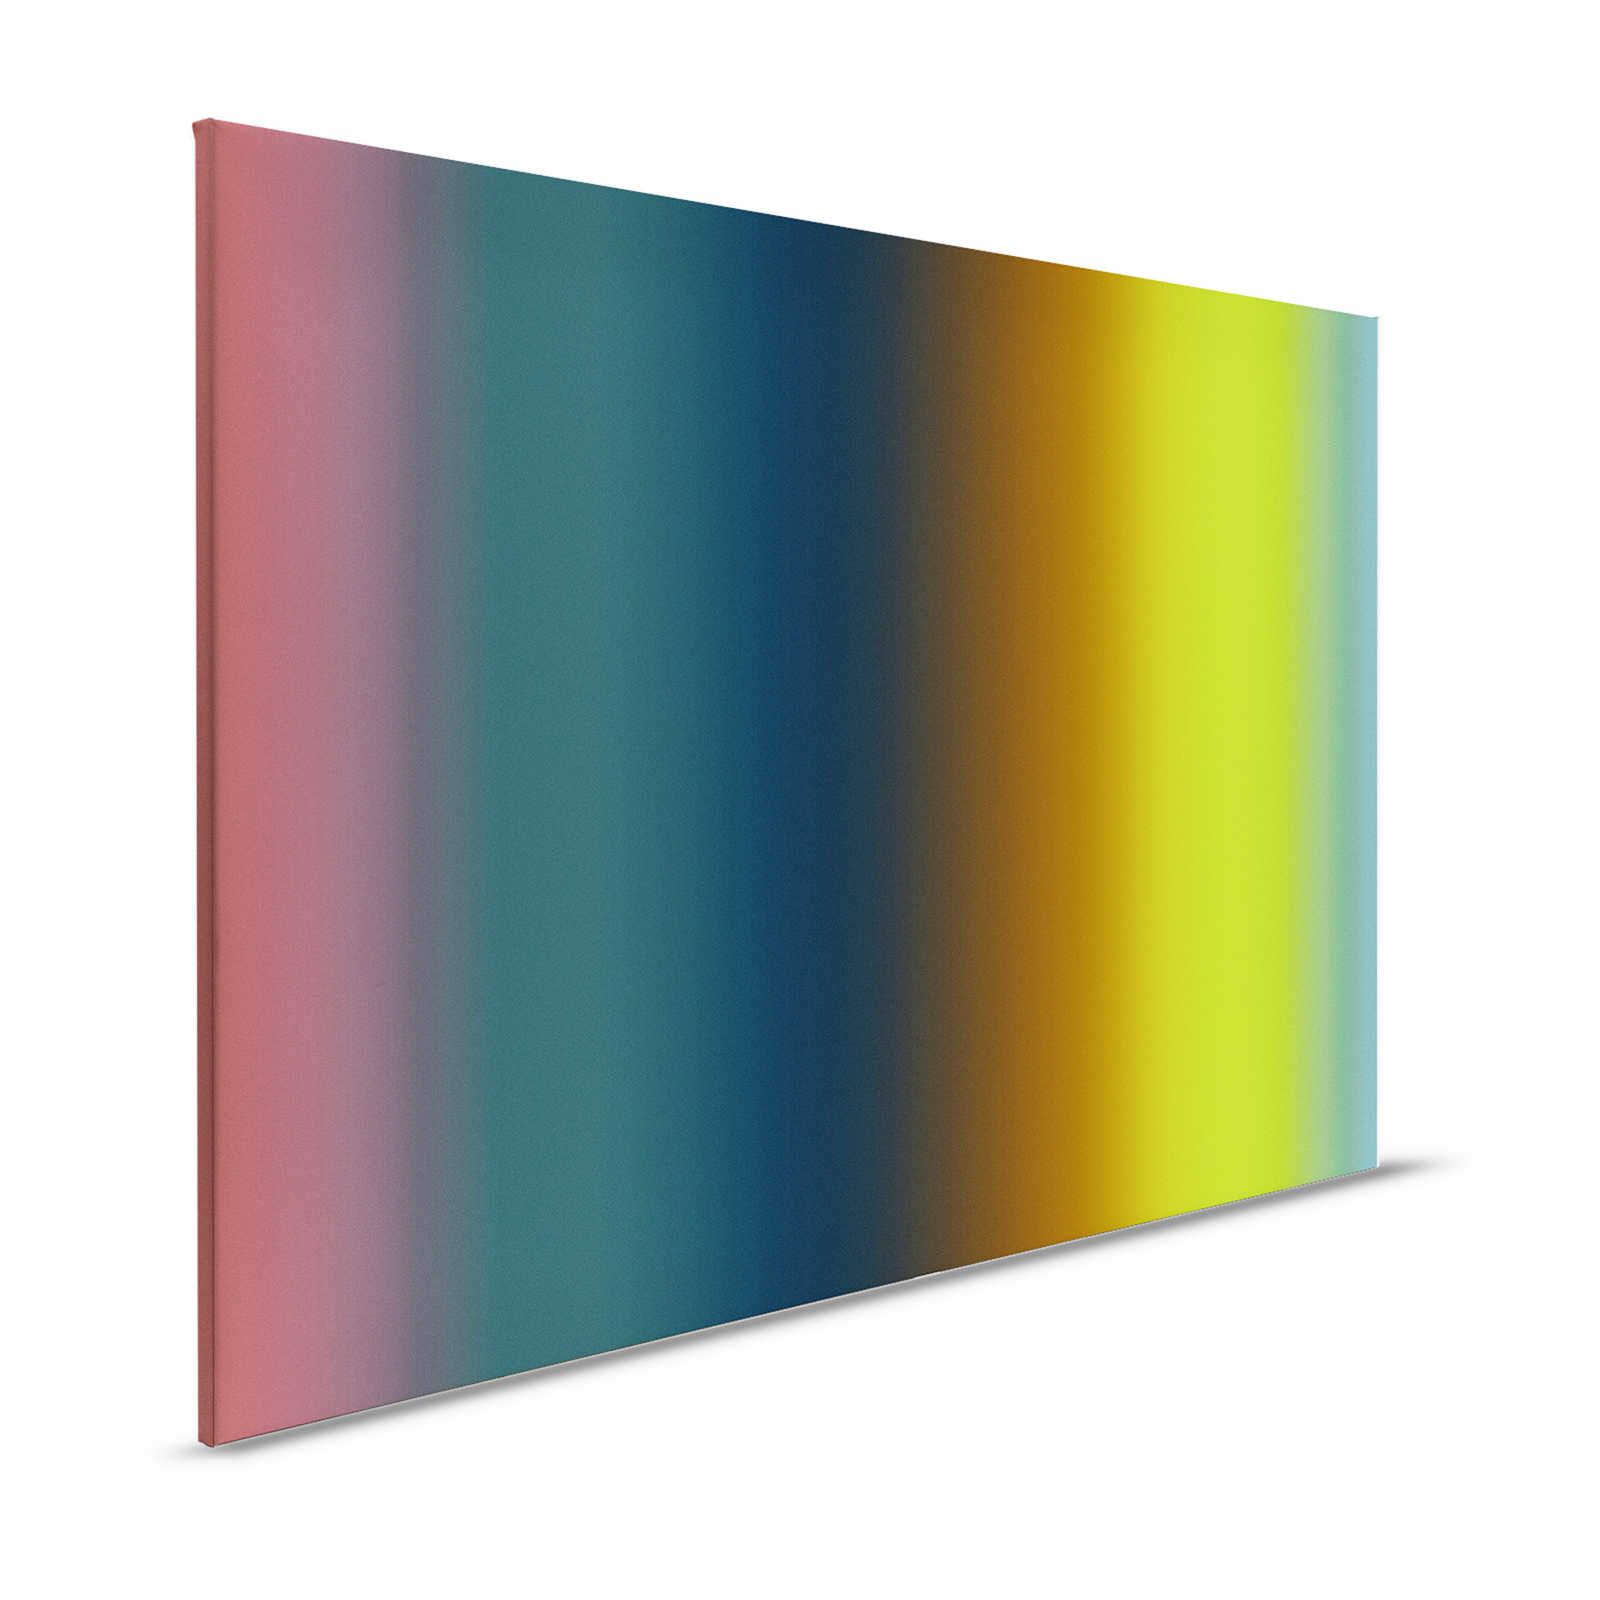 Over the Rainbow 1 - Canvas schilderij kleurenspectrum regenboog modern - 1,20 m x 0,80 m
